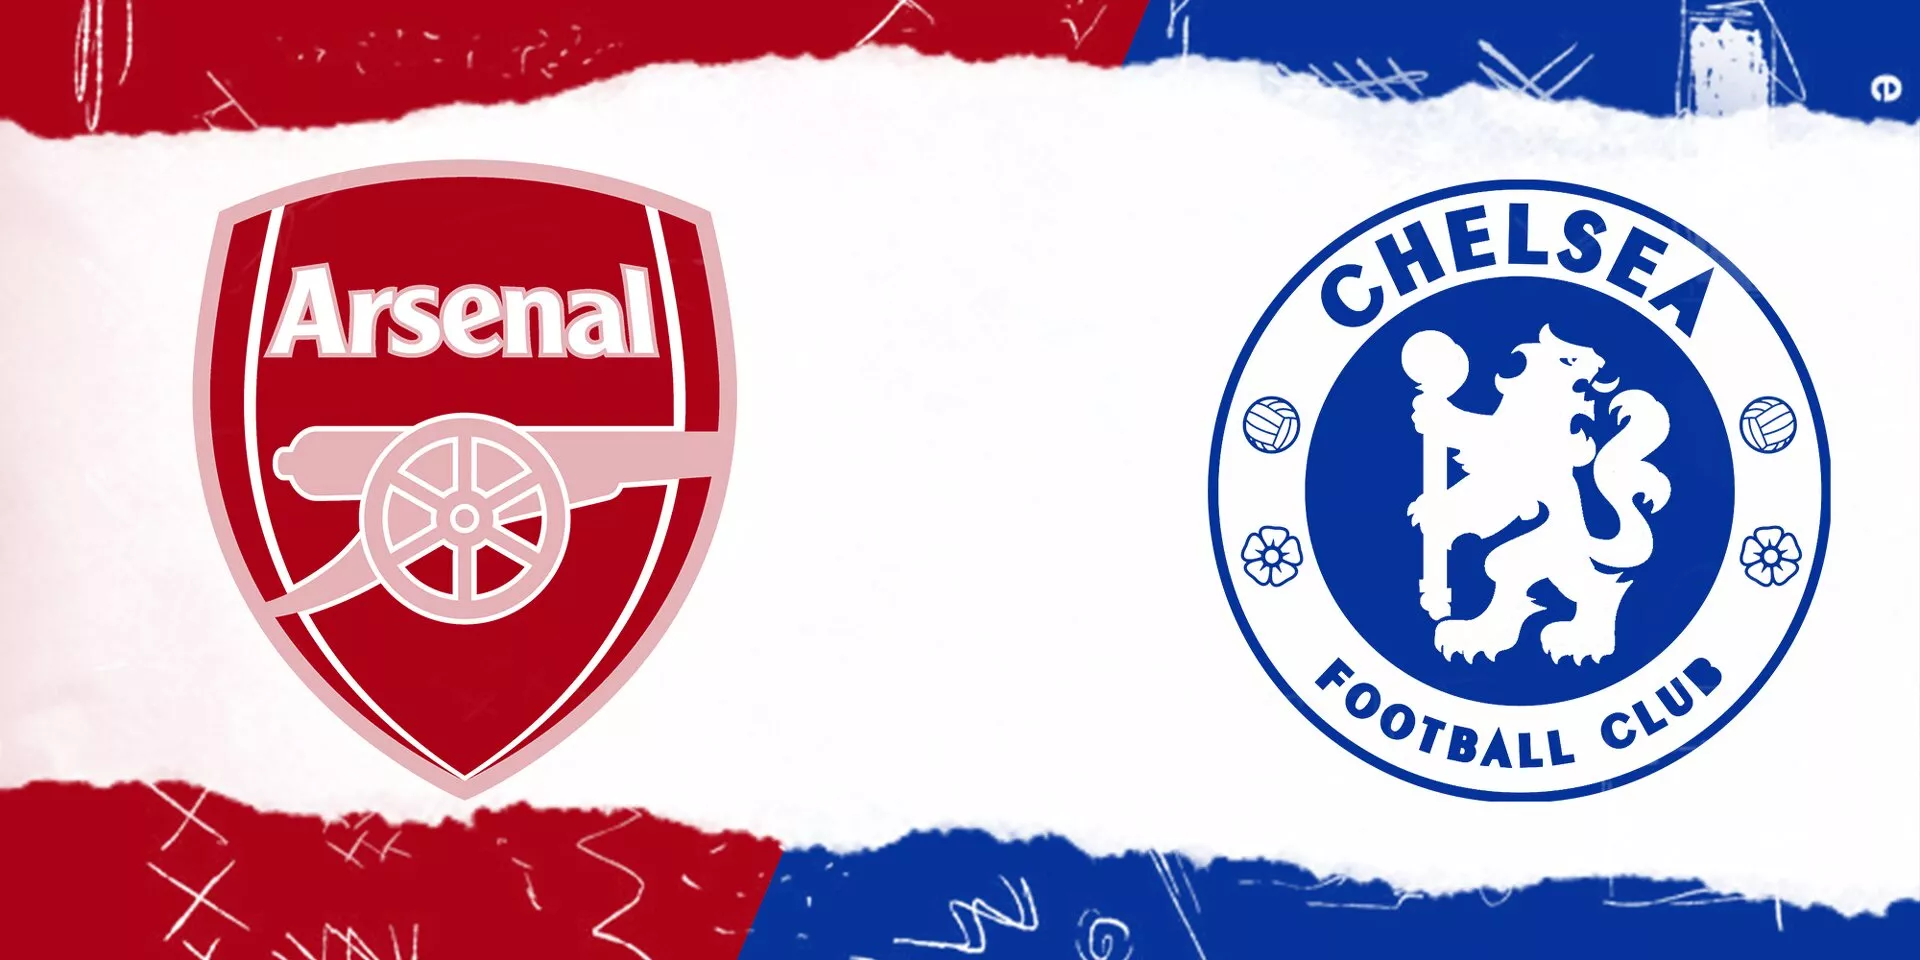 Arsenal vs Chelsea Live Updates: Premier League 2022-23